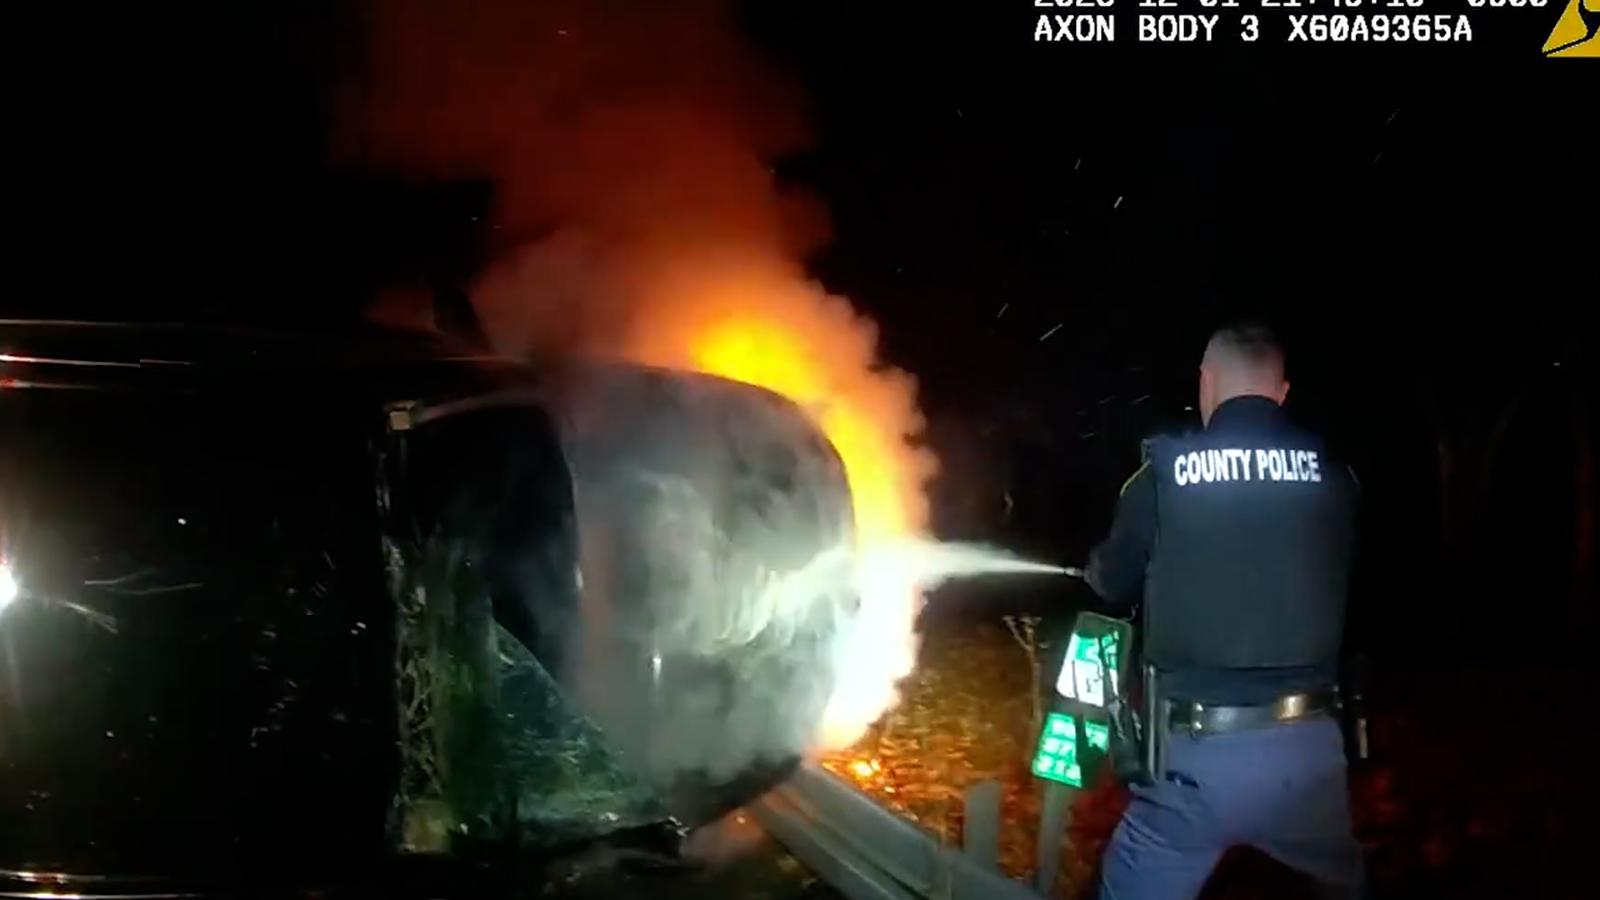 Dramático video muestra cómo policías sacan a un sospechoso de un
automóvil en llamas